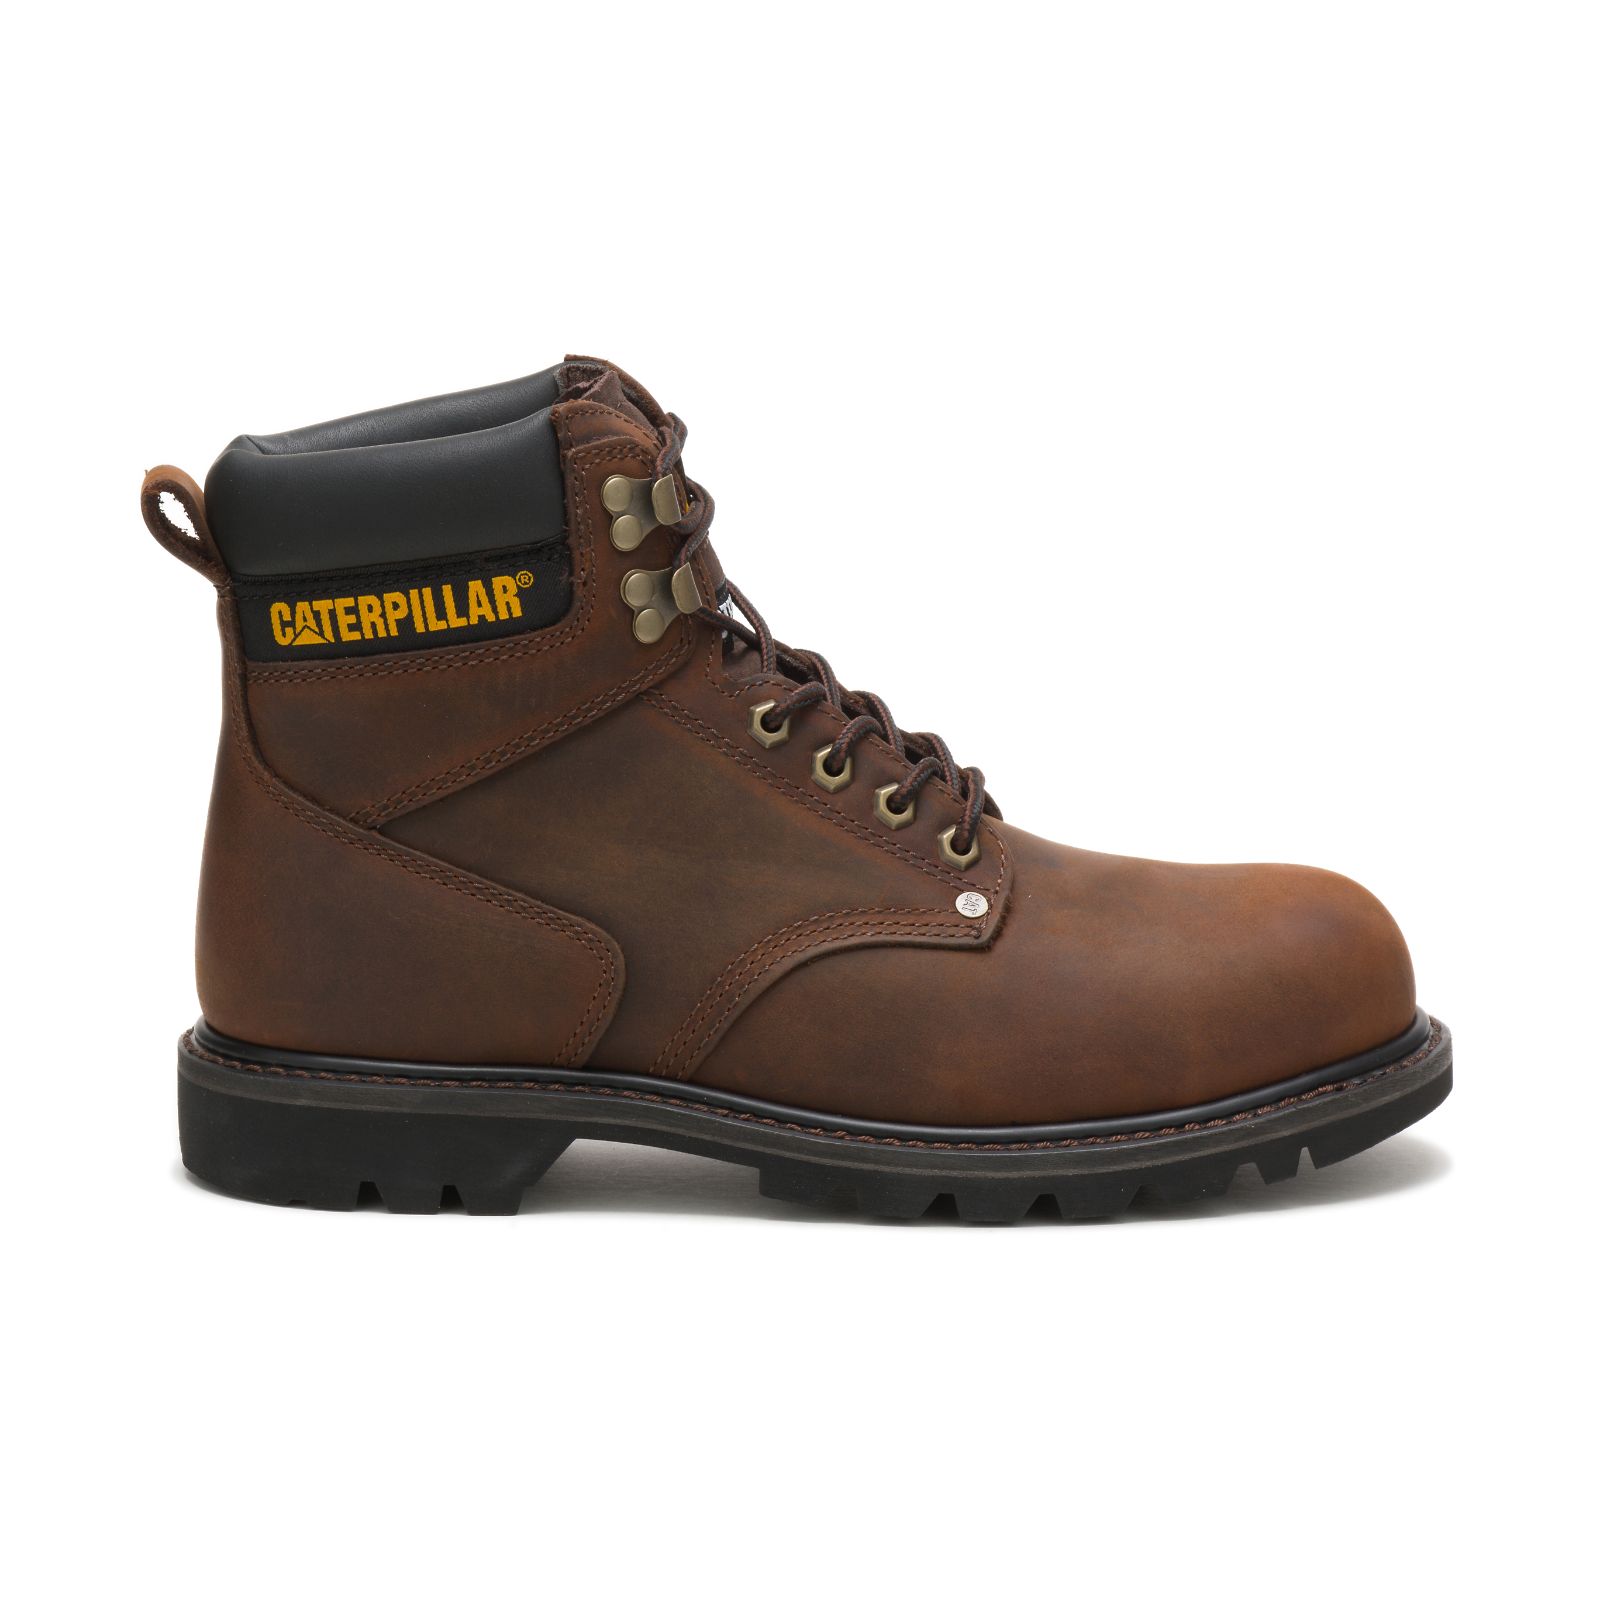 Men's Caterpillar Second Shift Steel Toe Steel Toe Boots Dark Brown | Cat-172560